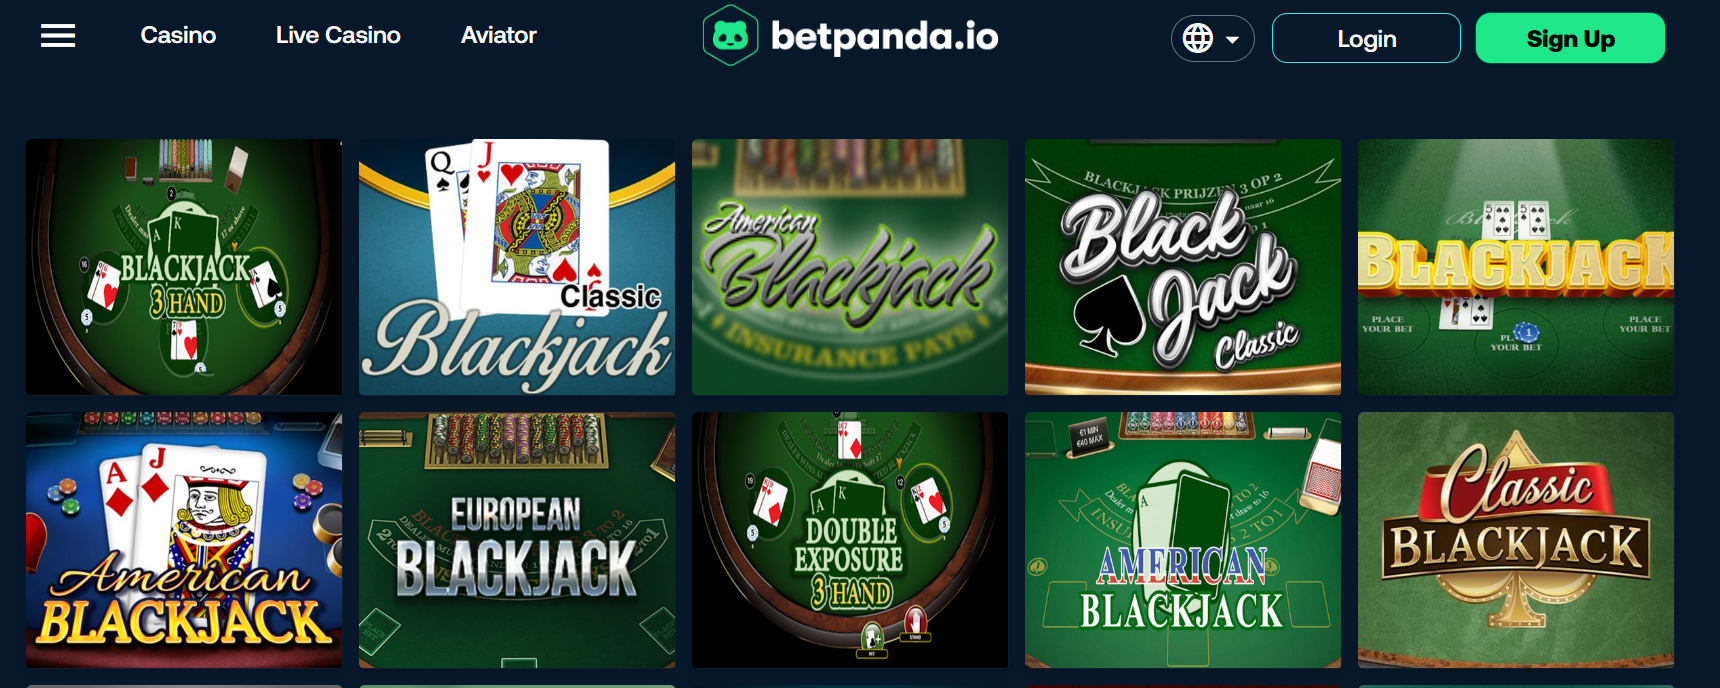 betpanda.io blackjack variety